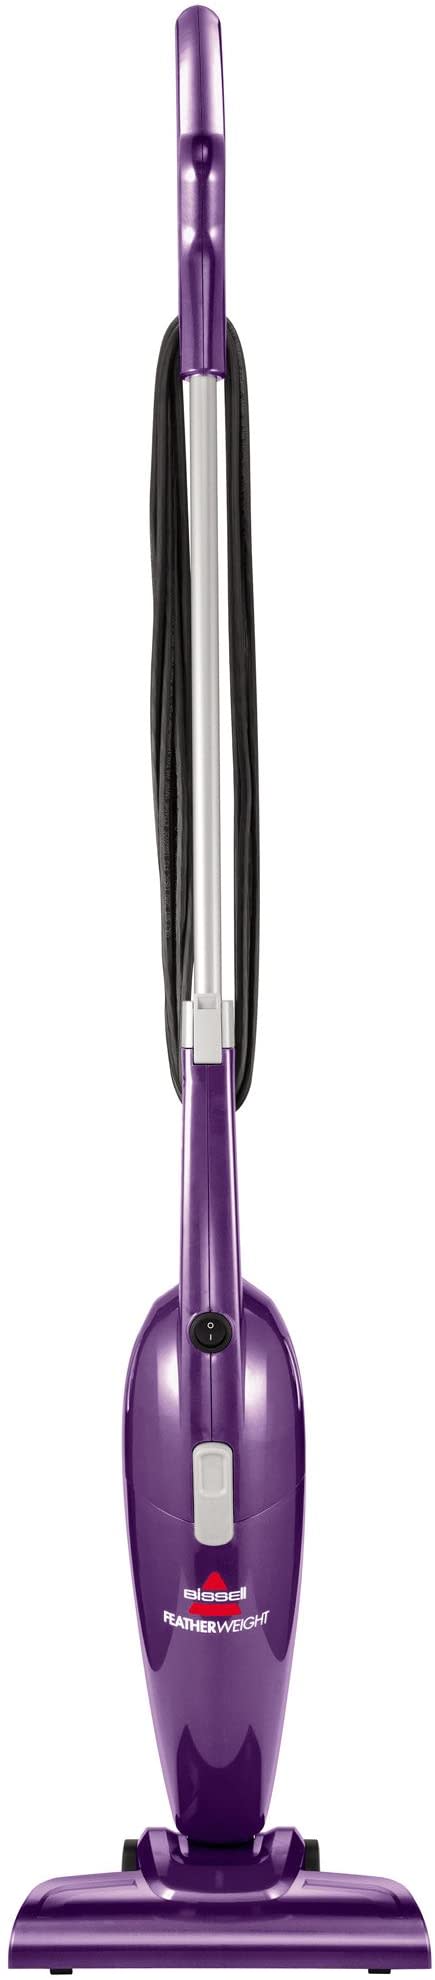 best lightweight vacuum - Bissell Featherweight Stick Vacuum